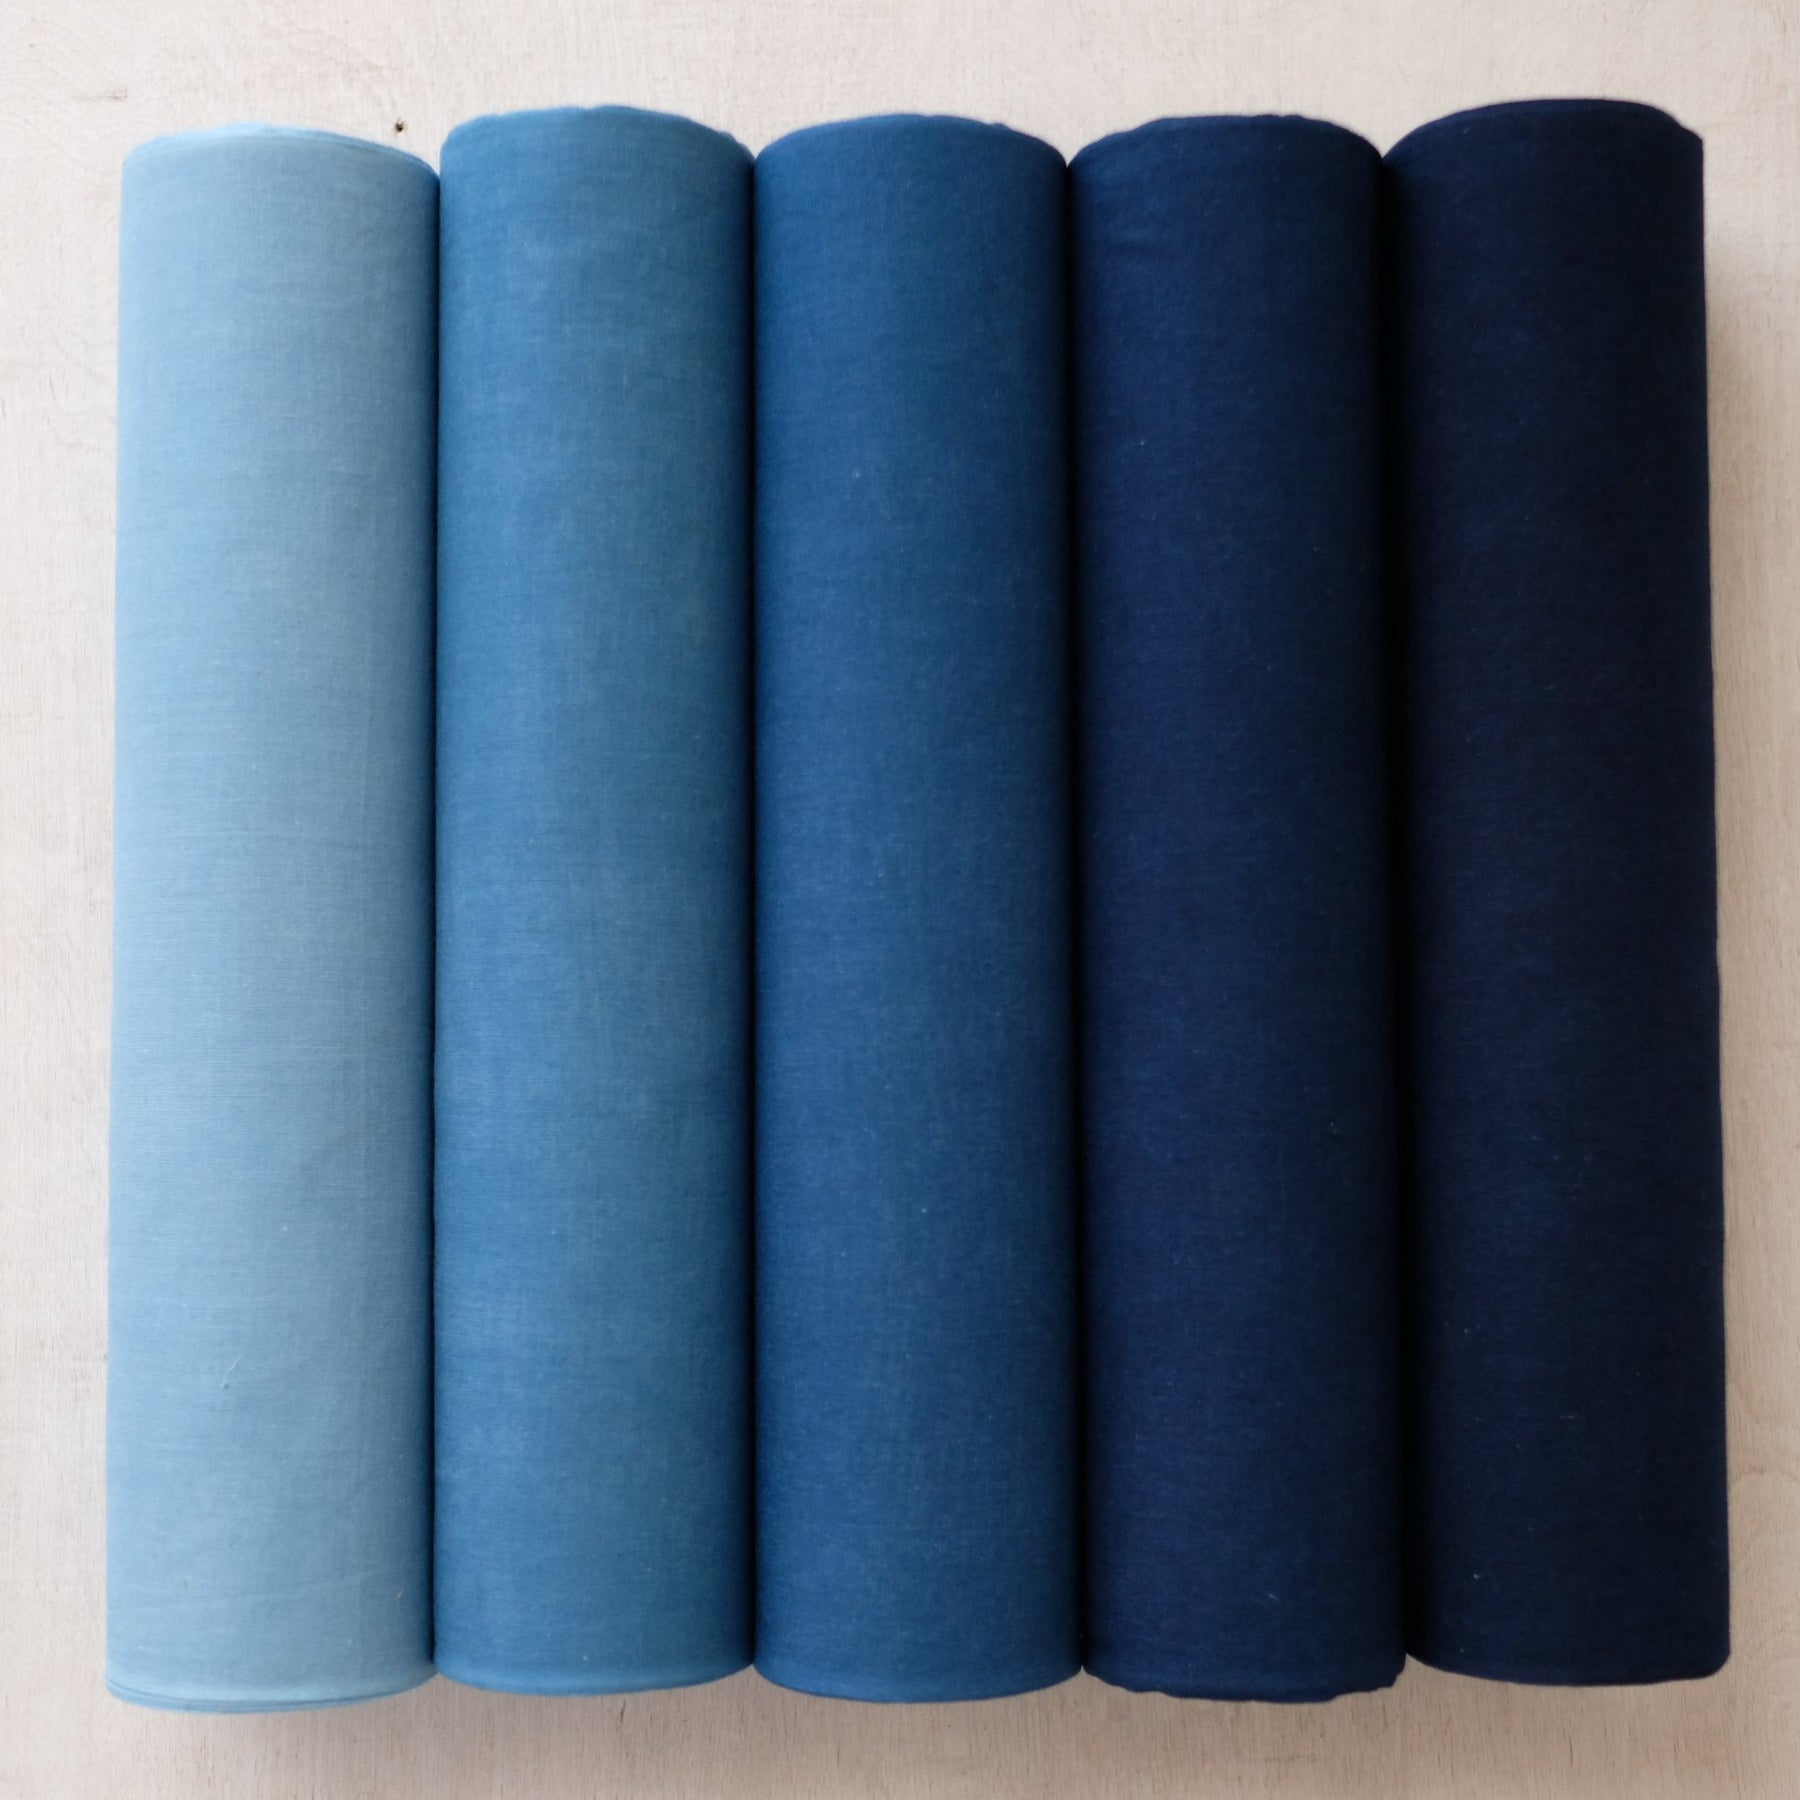 Indigo-dyed fabric - 100% cotton